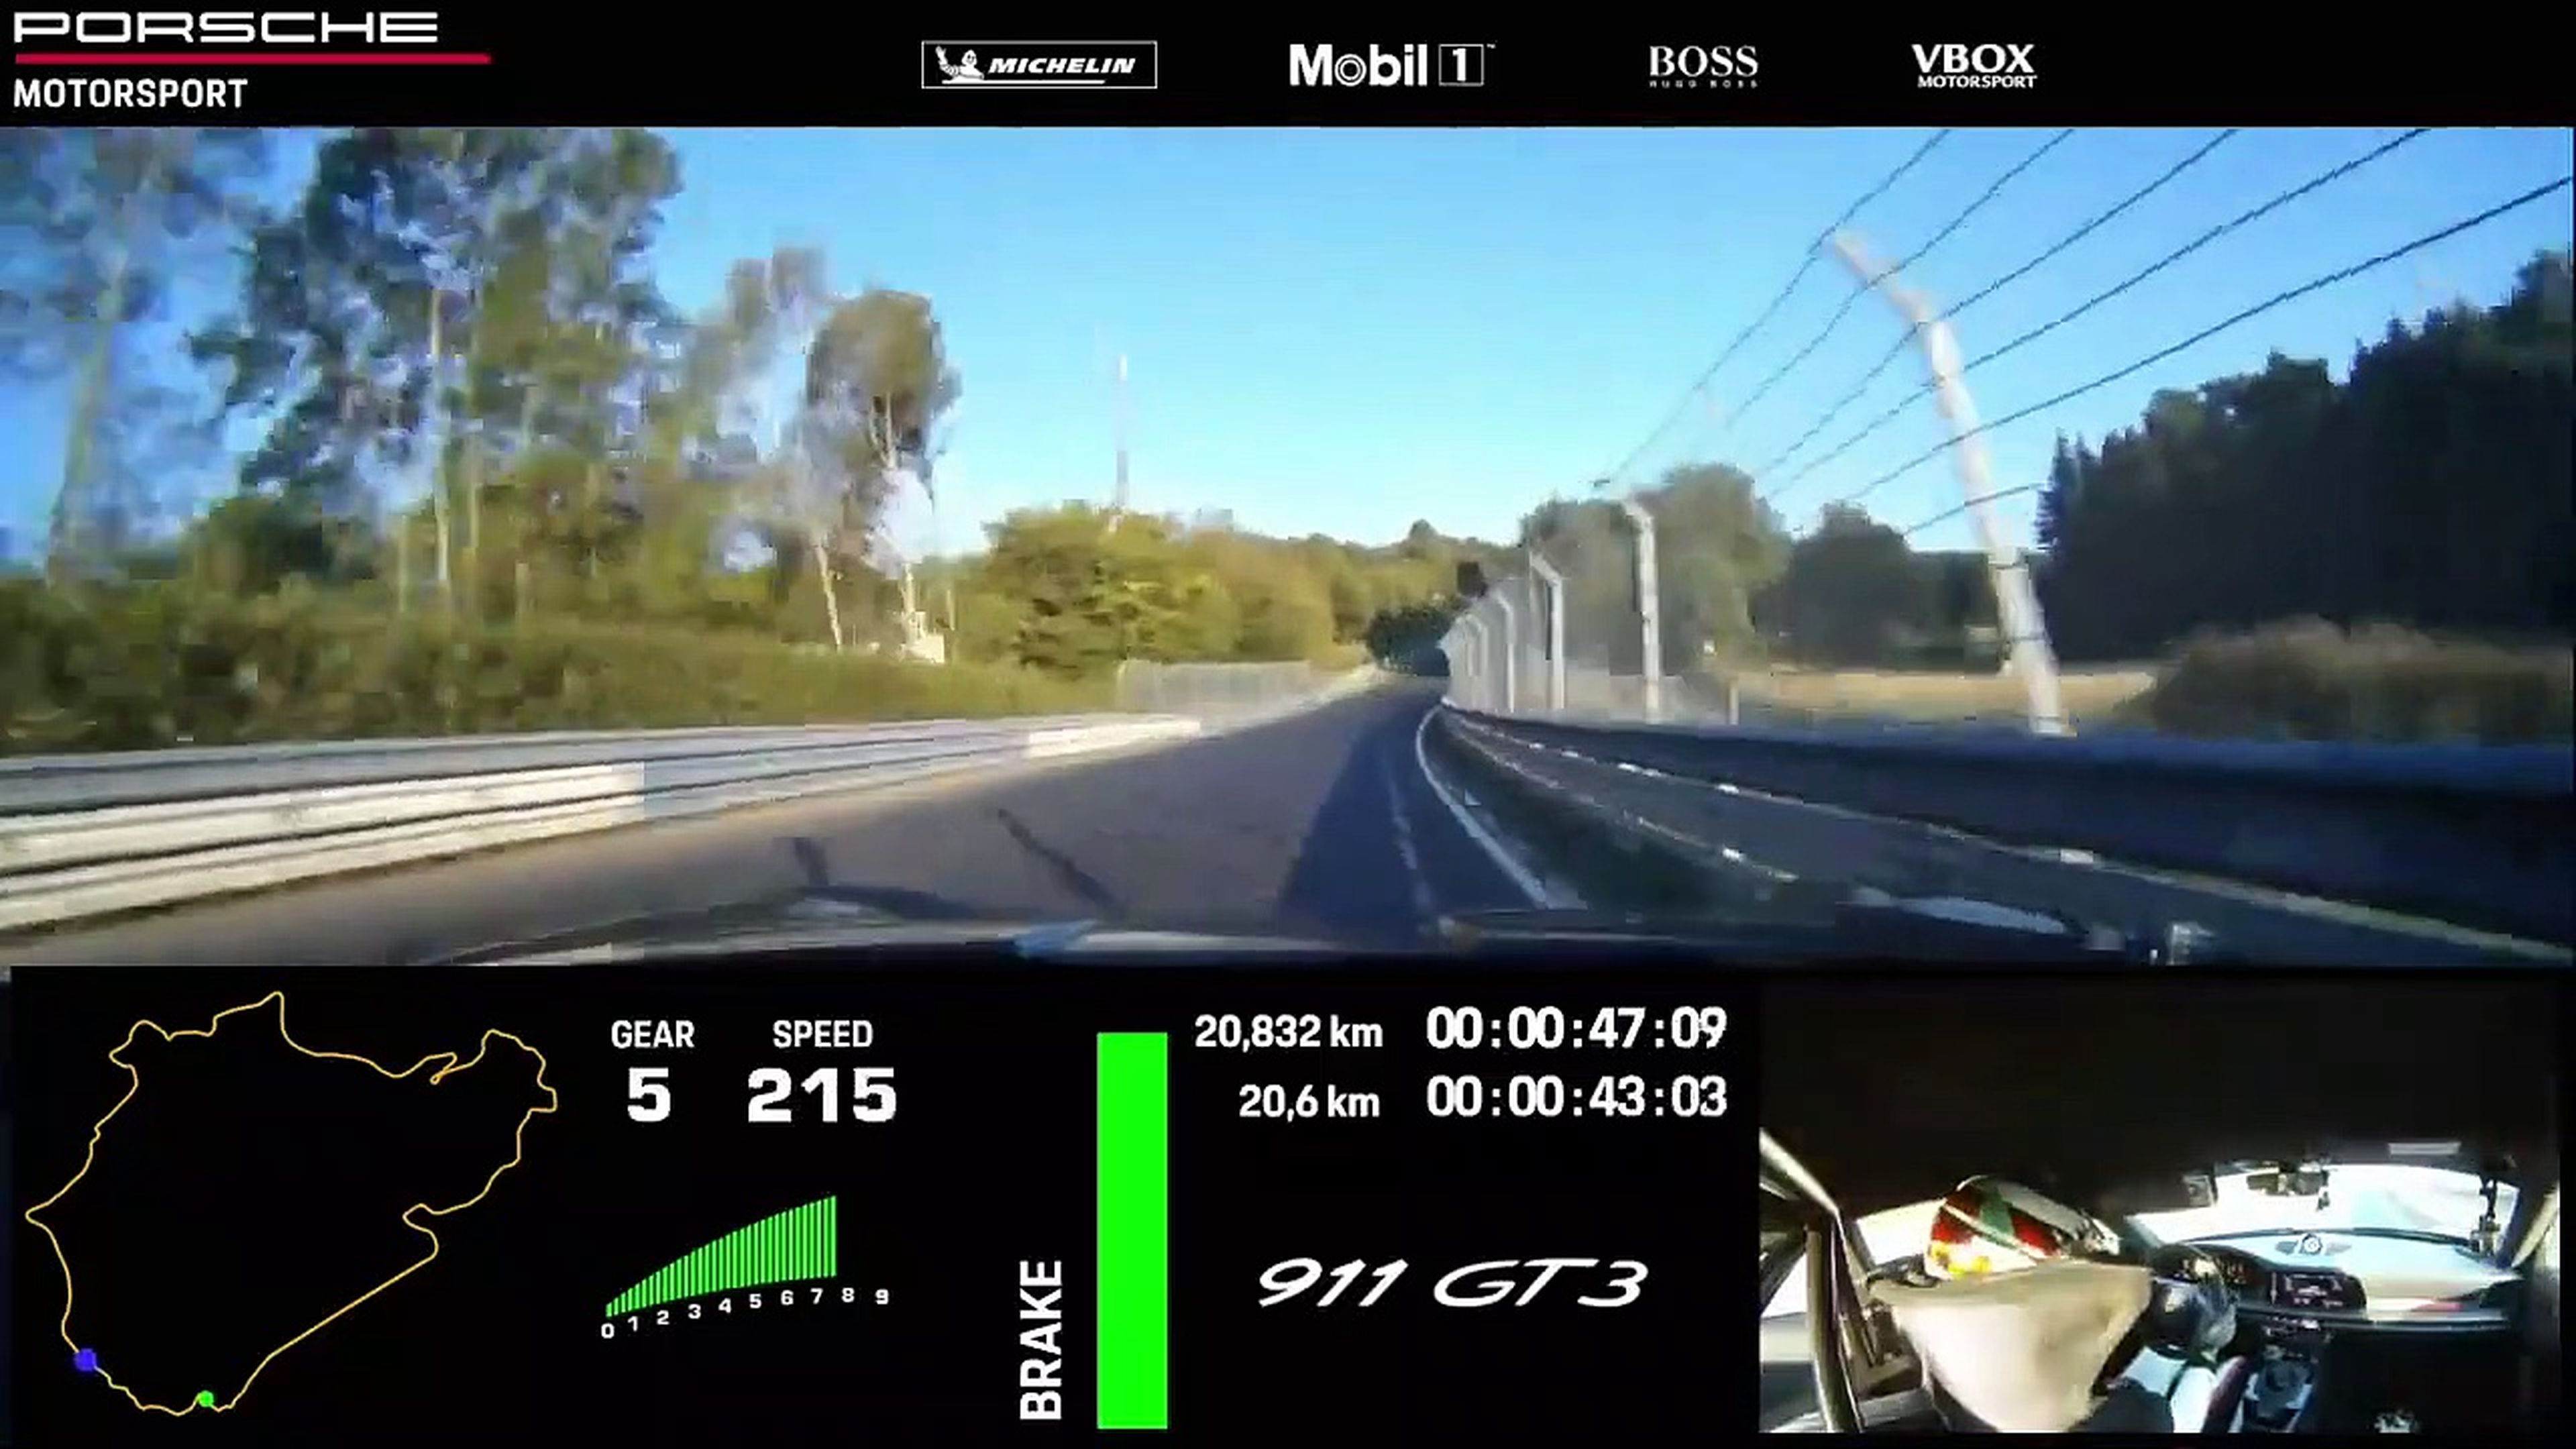 VÍDEO: Porsche 911 GT3 2021, su vuelta rápida a Nürburgring en 6:59 segundos